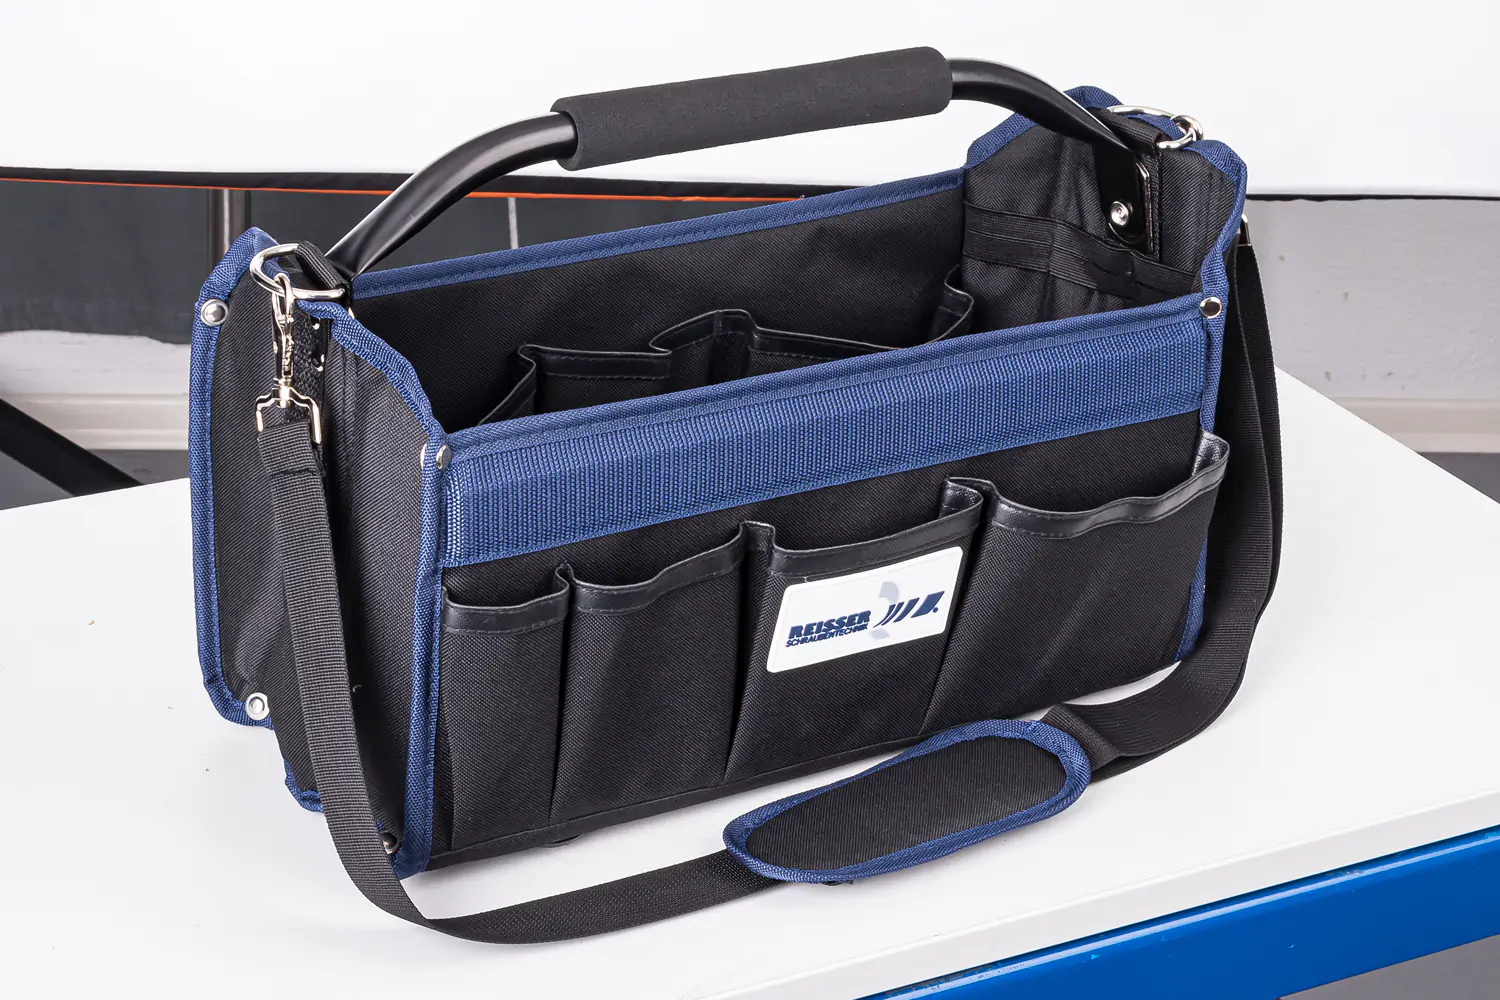 Produktfoto in RAW-Qualität Werkzeugtasche mit Griff und Trageriemen leer, schwarz-blau